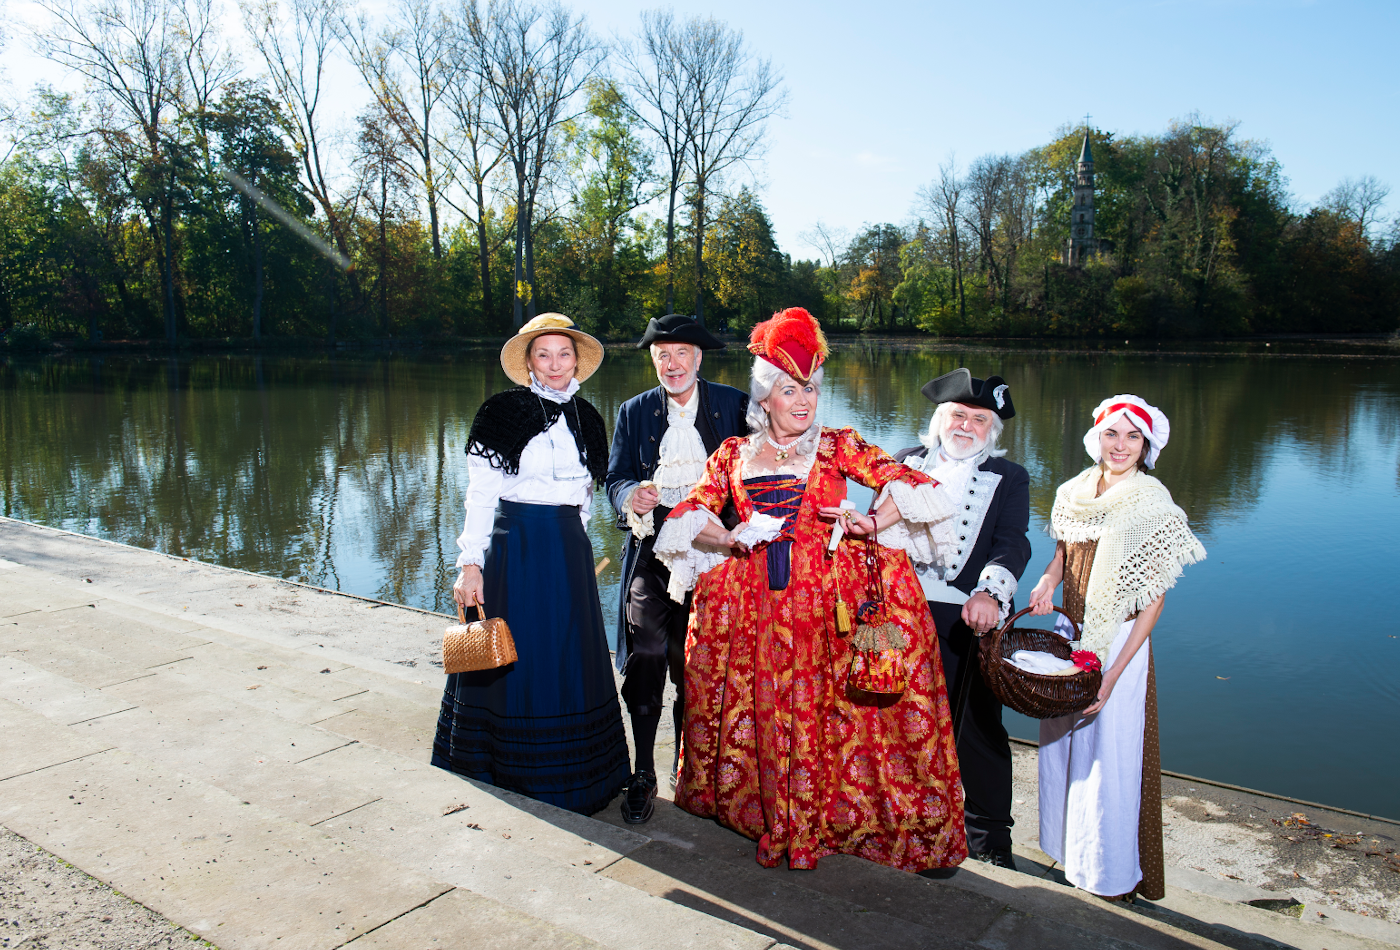 Fünf kostümierte Personen stehen vor einem See.